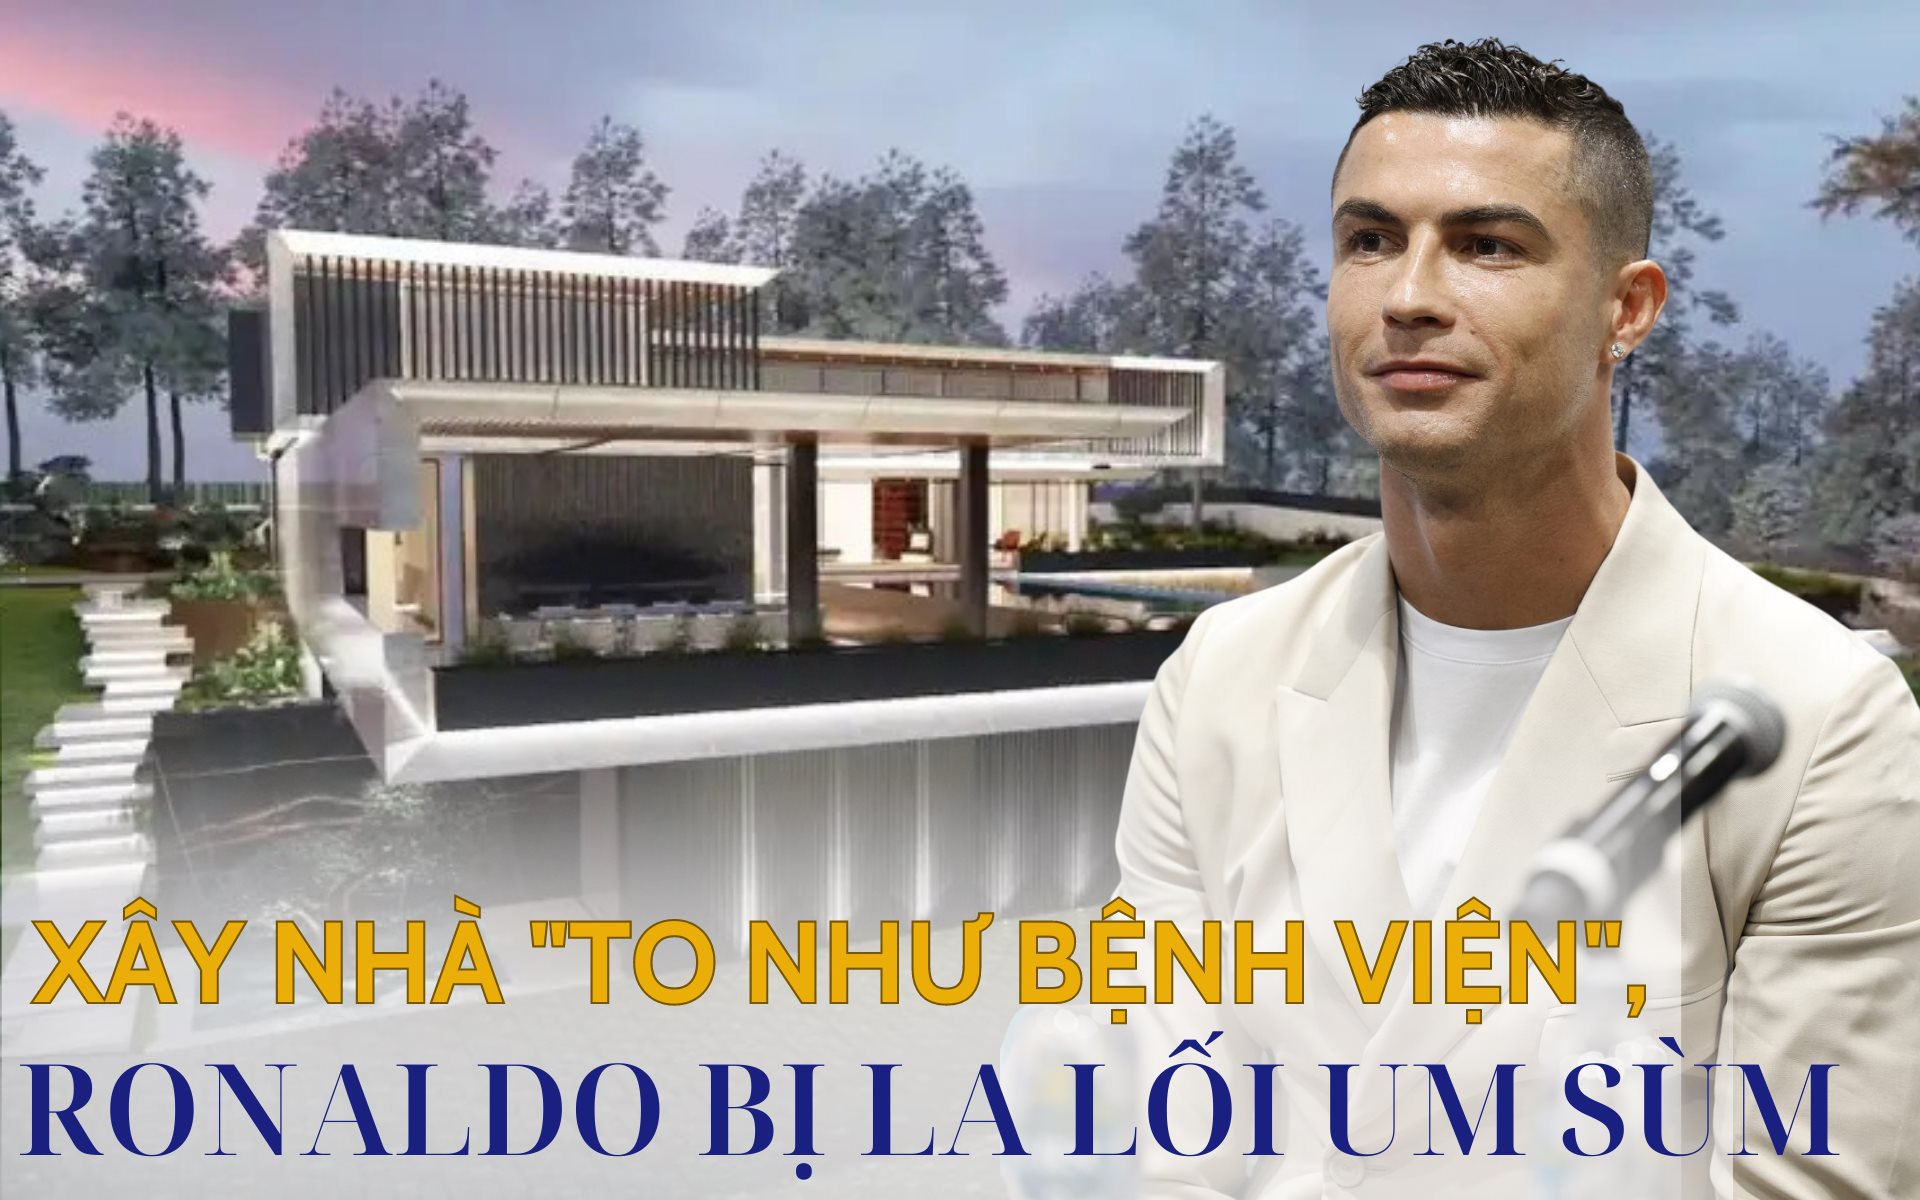 &quot;Nỗi khổ&quot; của triệu phú Ronaldo: Xây biệt thự hơn 820 tỷ đồng, to ngang bệnh viện nhưng bị hàng xóm la lối um sùm - Ảnh 1.